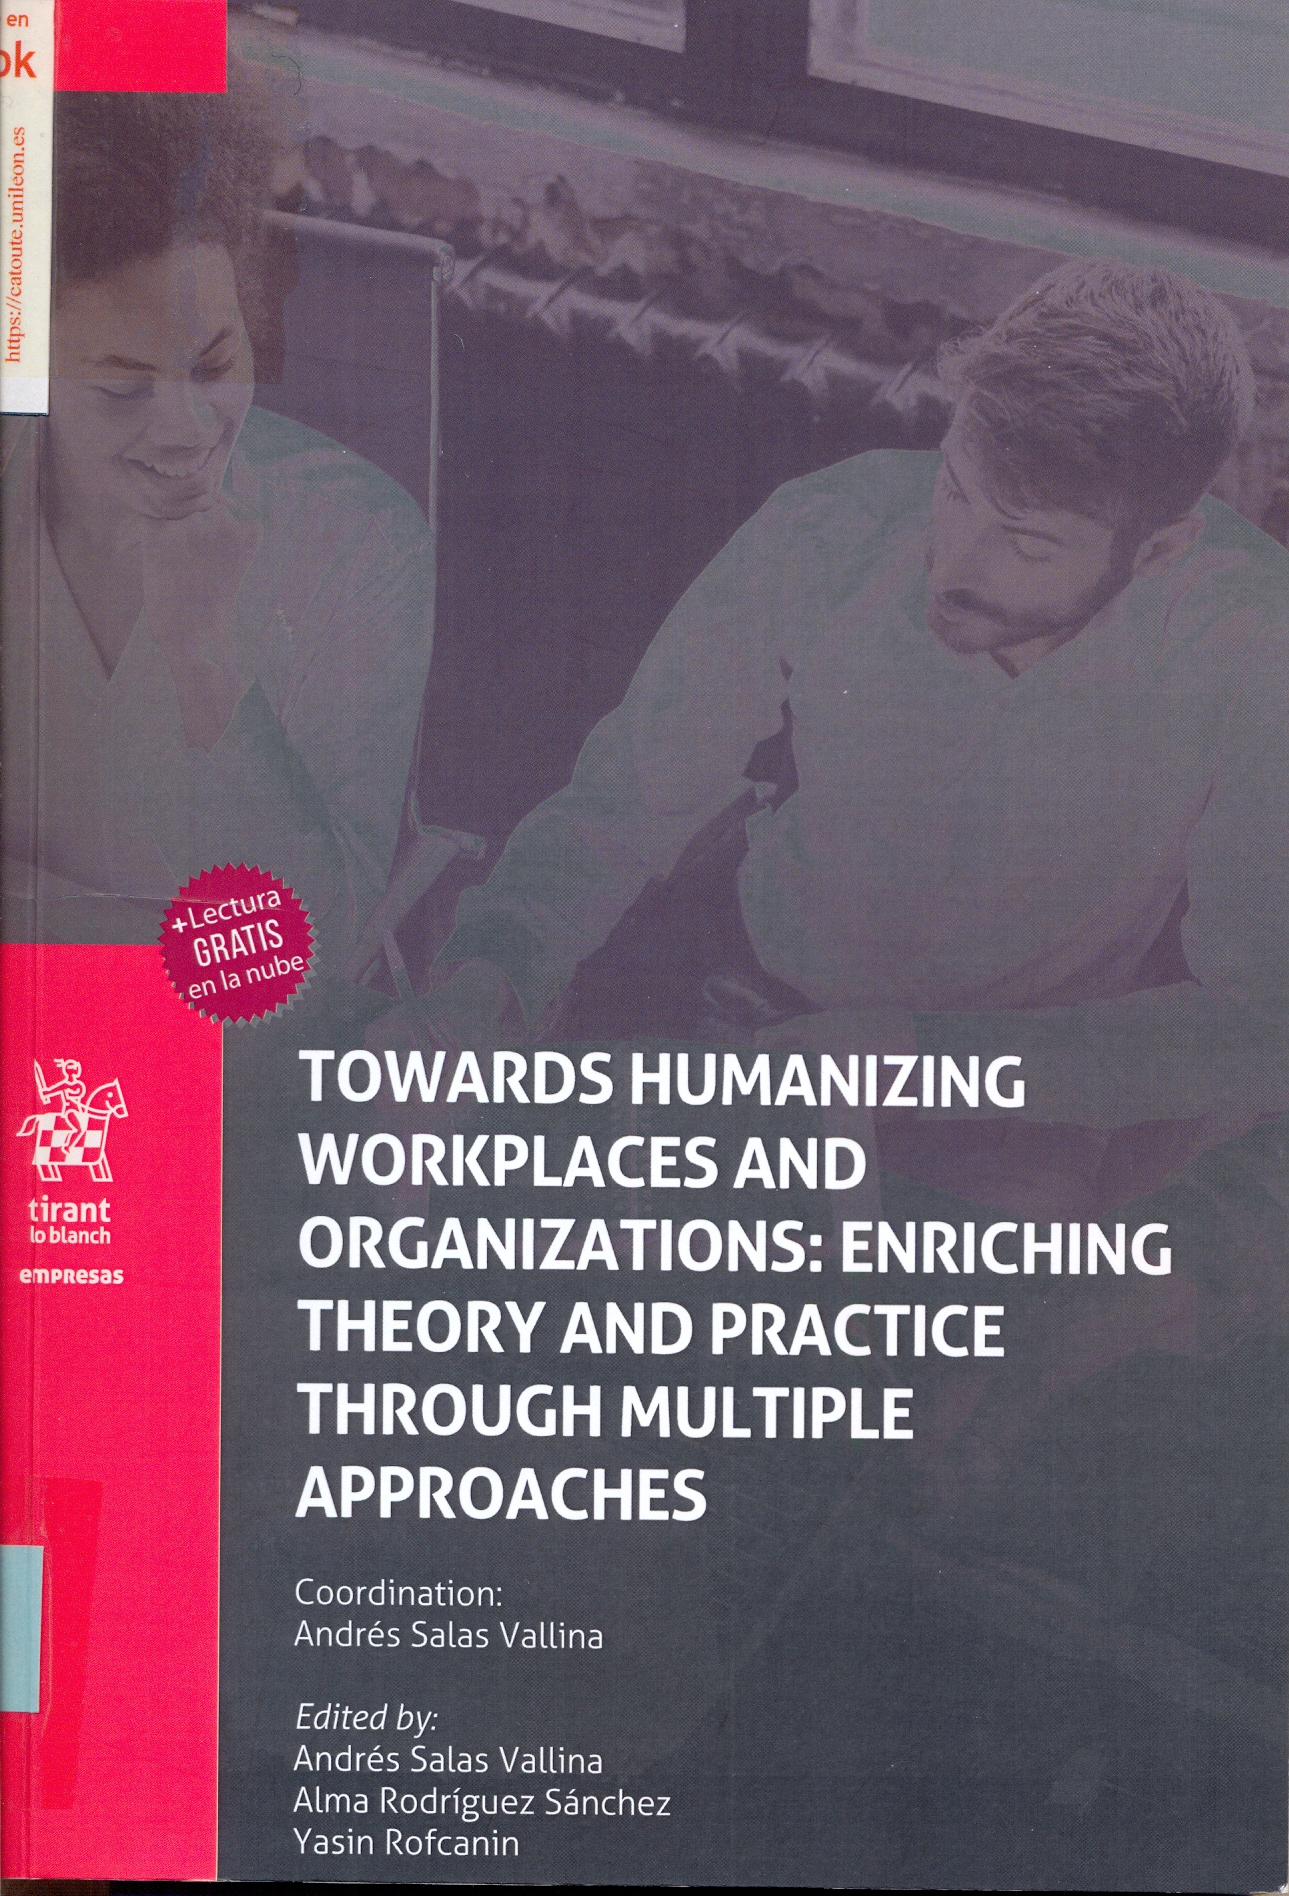 Imagen de portada del libro Towards humanizing workplaces and organizations